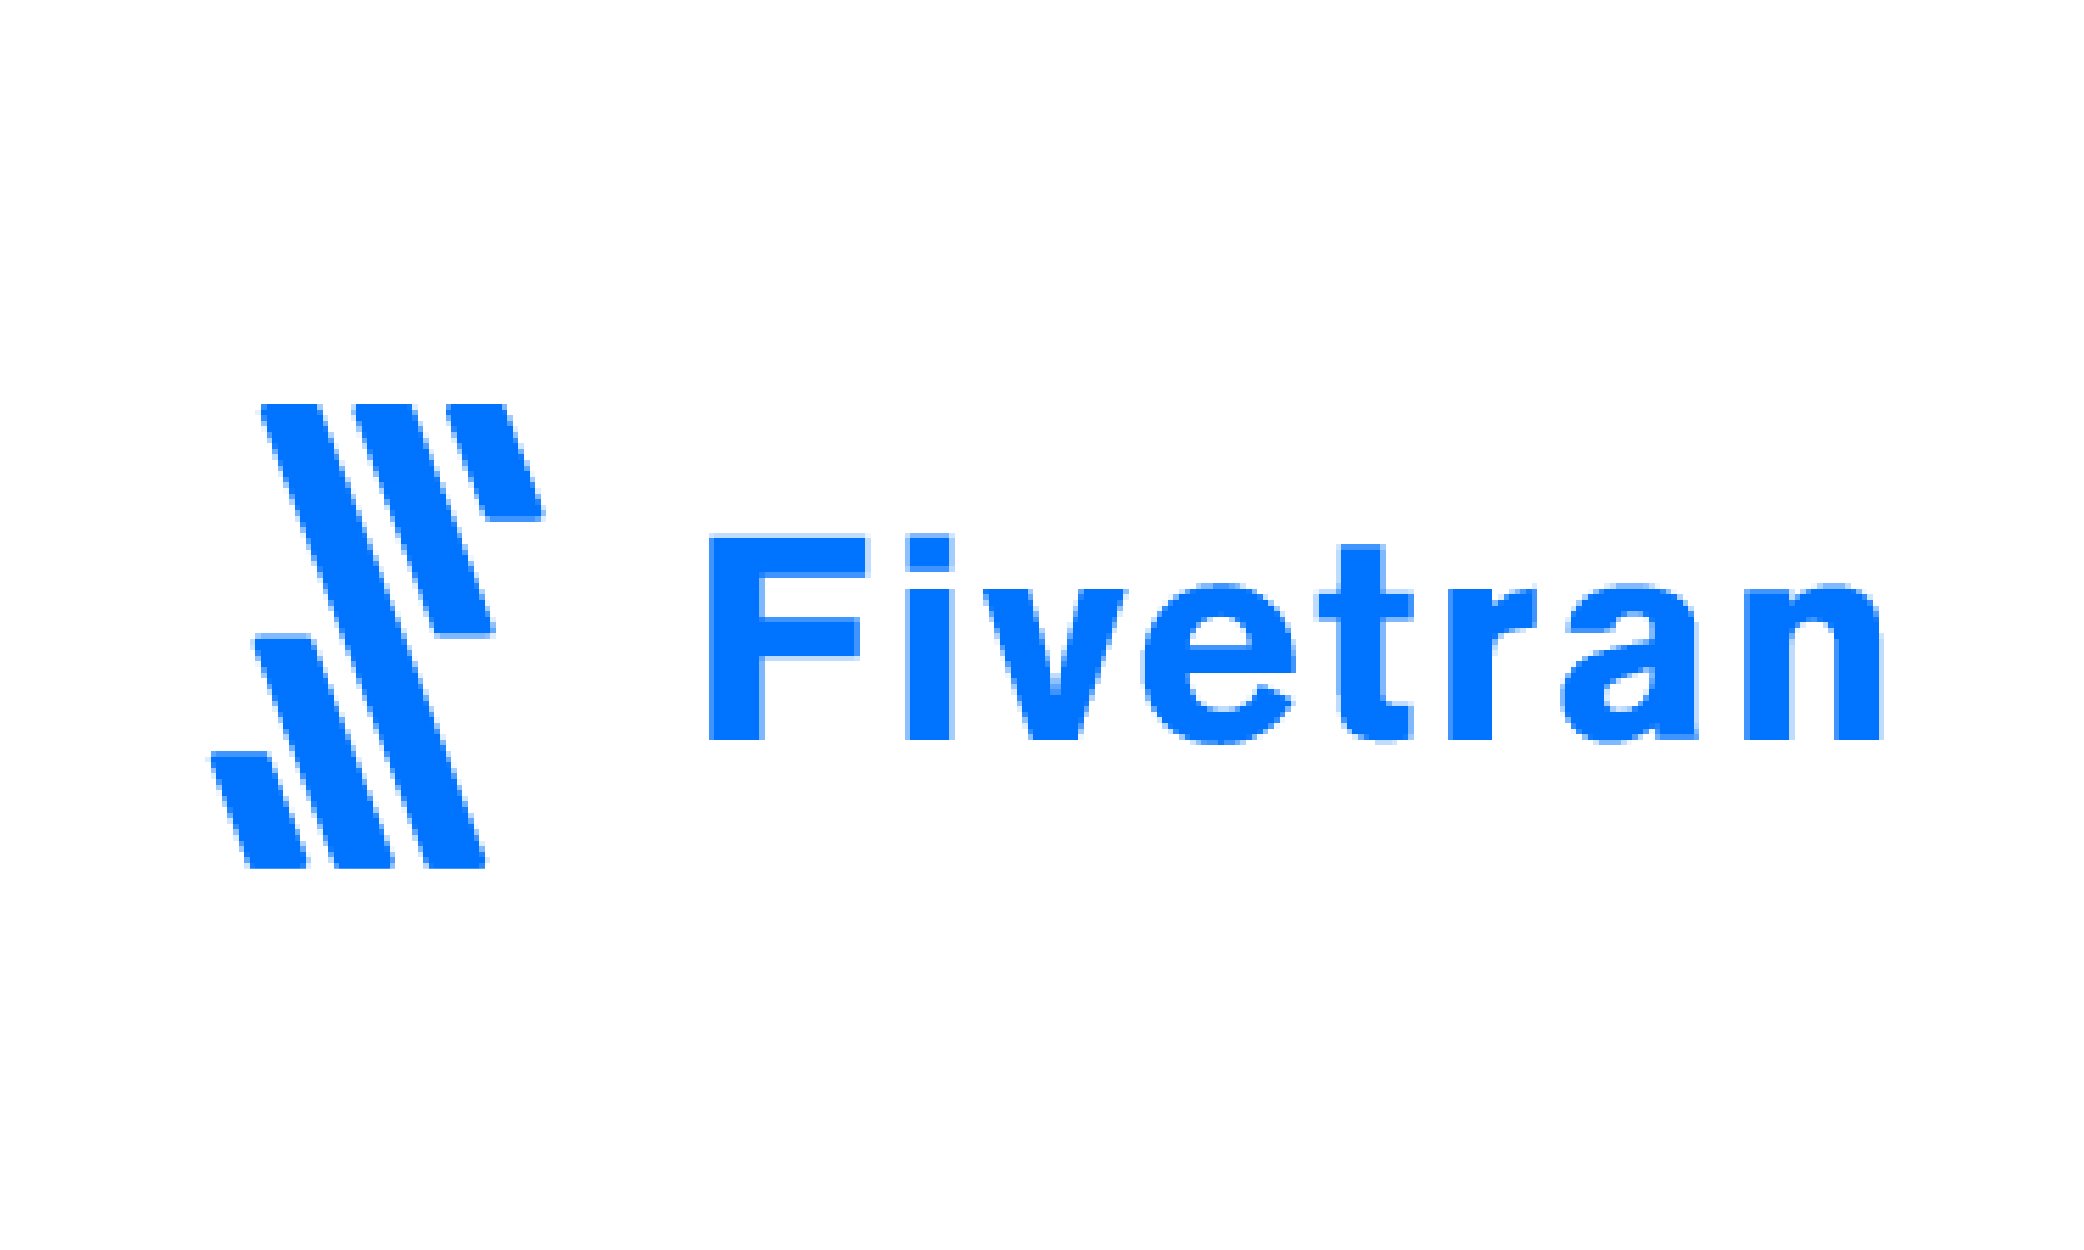 Fivetran logo